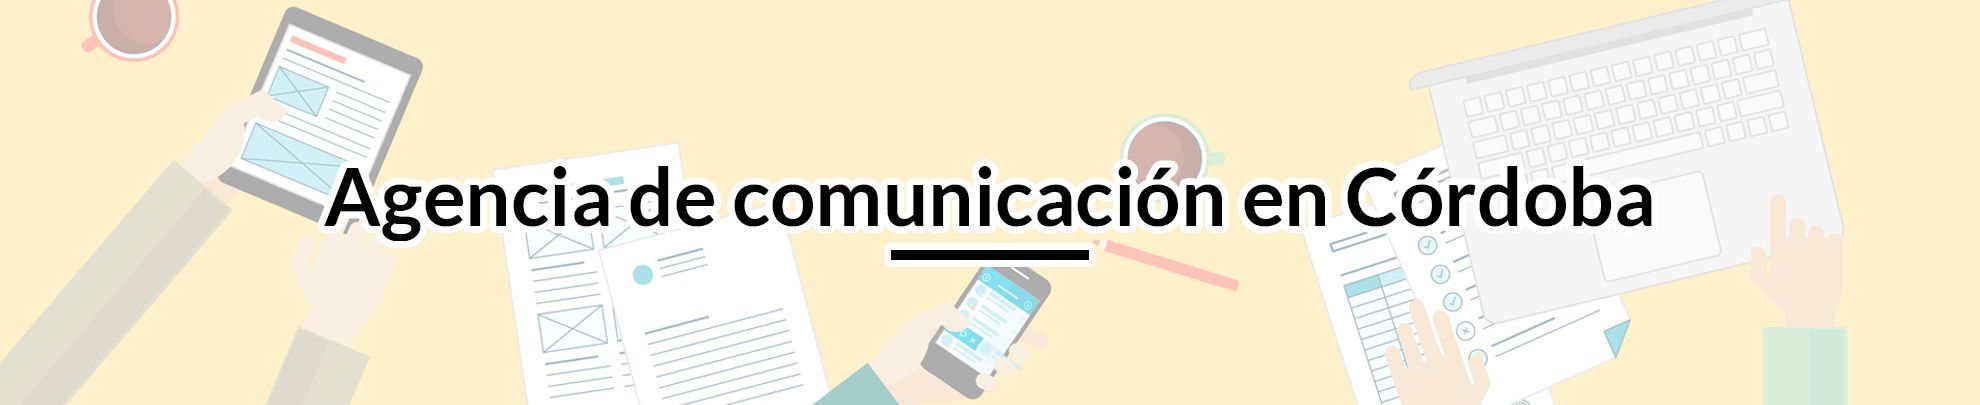 Agencia de comunicación en Córdoba agencia-de-comunicacion-en-cordoba 